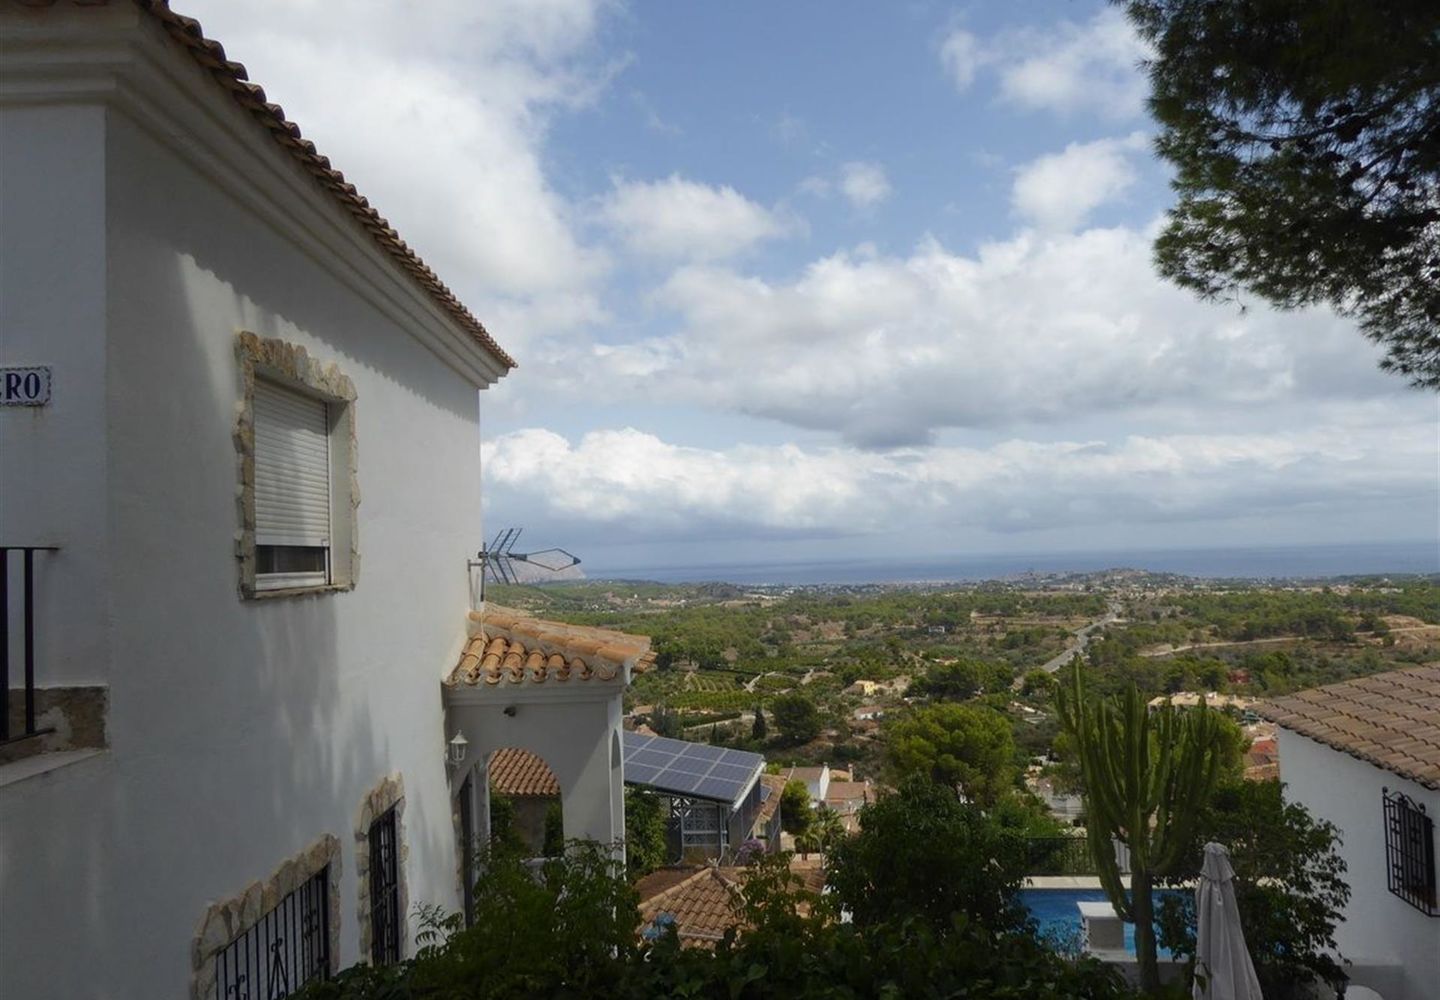 CASALINA ESPANA stelt te koop gerenoveerde(2012)villa van 90 m² op een terrein van 350 m² in La Nucia, Costa Blanca Noord, met panoramisch zicht, gekend van het prachtige oud dorpscentrum van La Nucia met zijn Plaza Mayor, de kerk van de 18de eeuw, de o